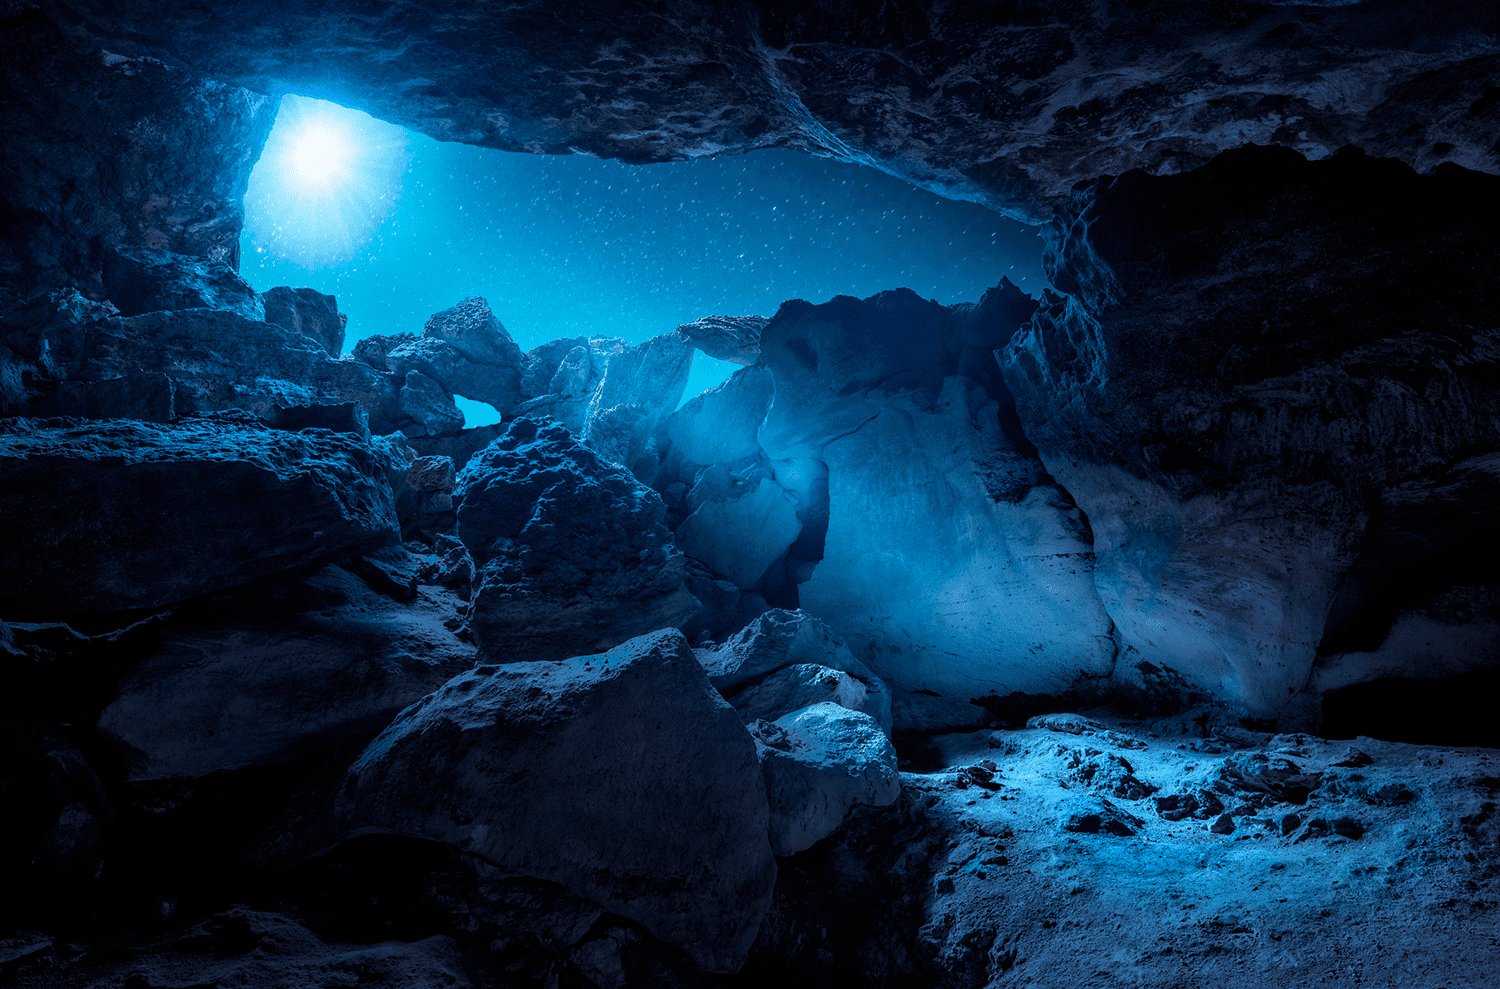 blue-moon-cave-572f63075f9b58c34c820622.png